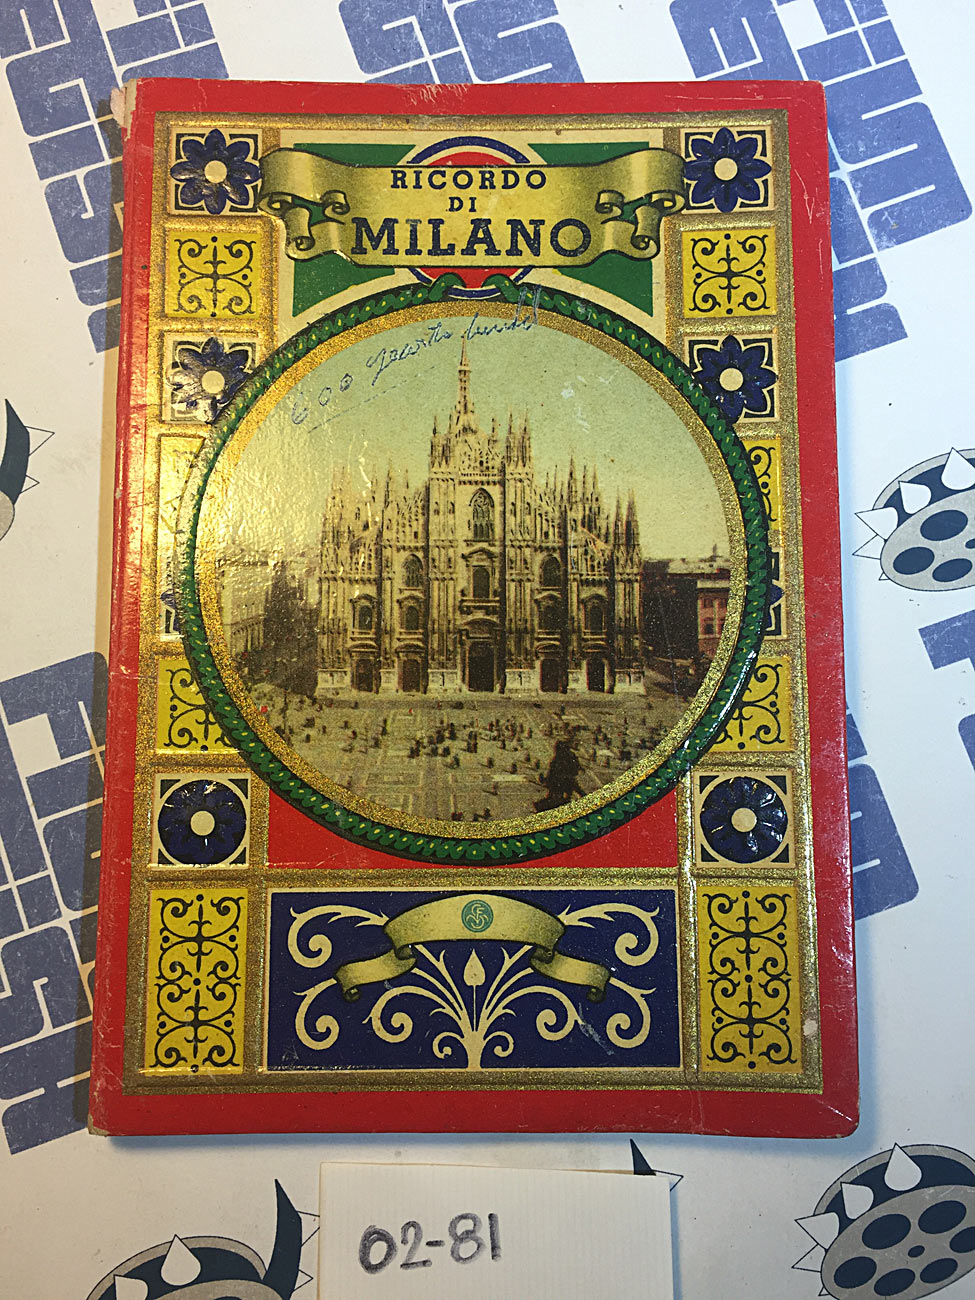 Ricordo Di Milano (Memory of Milan) Original Fold Out Picture Book [281]